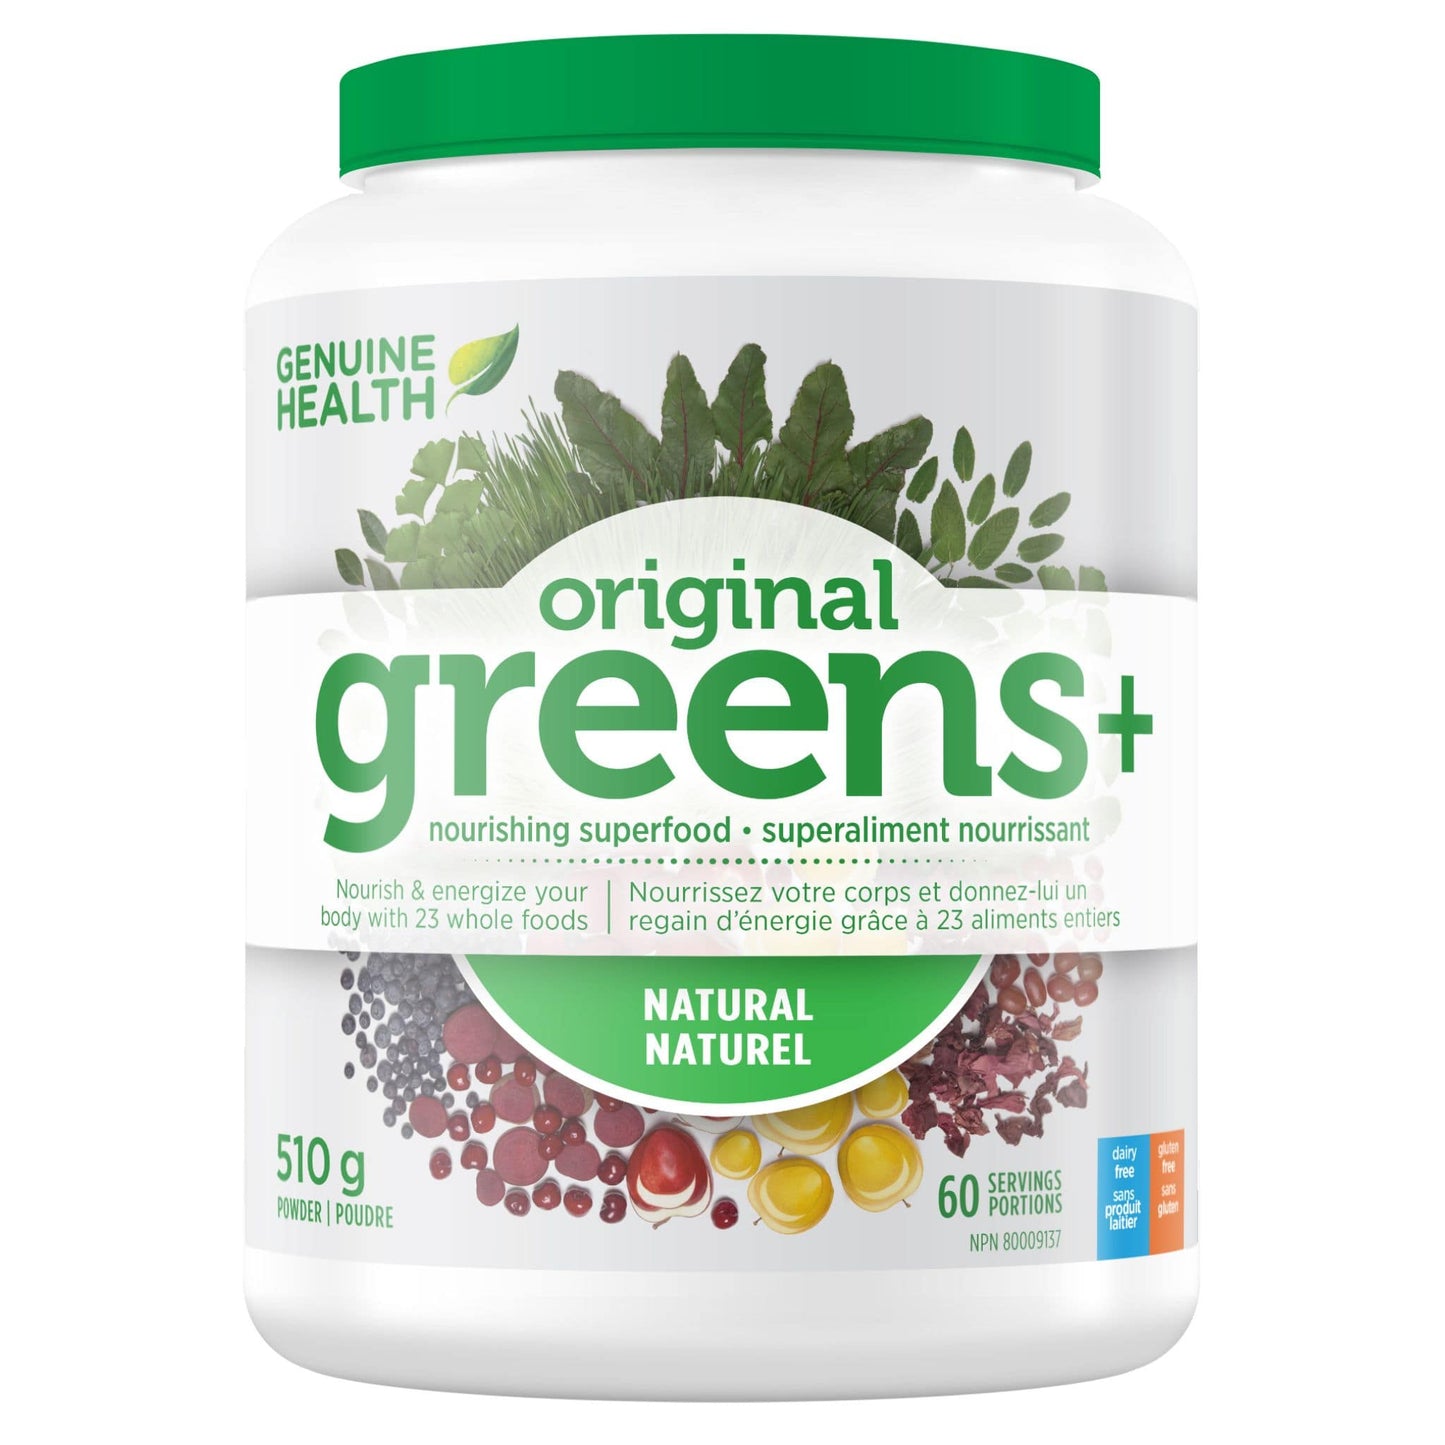 Original, 510g | Genuine Health Original Greens+ // natural flavour